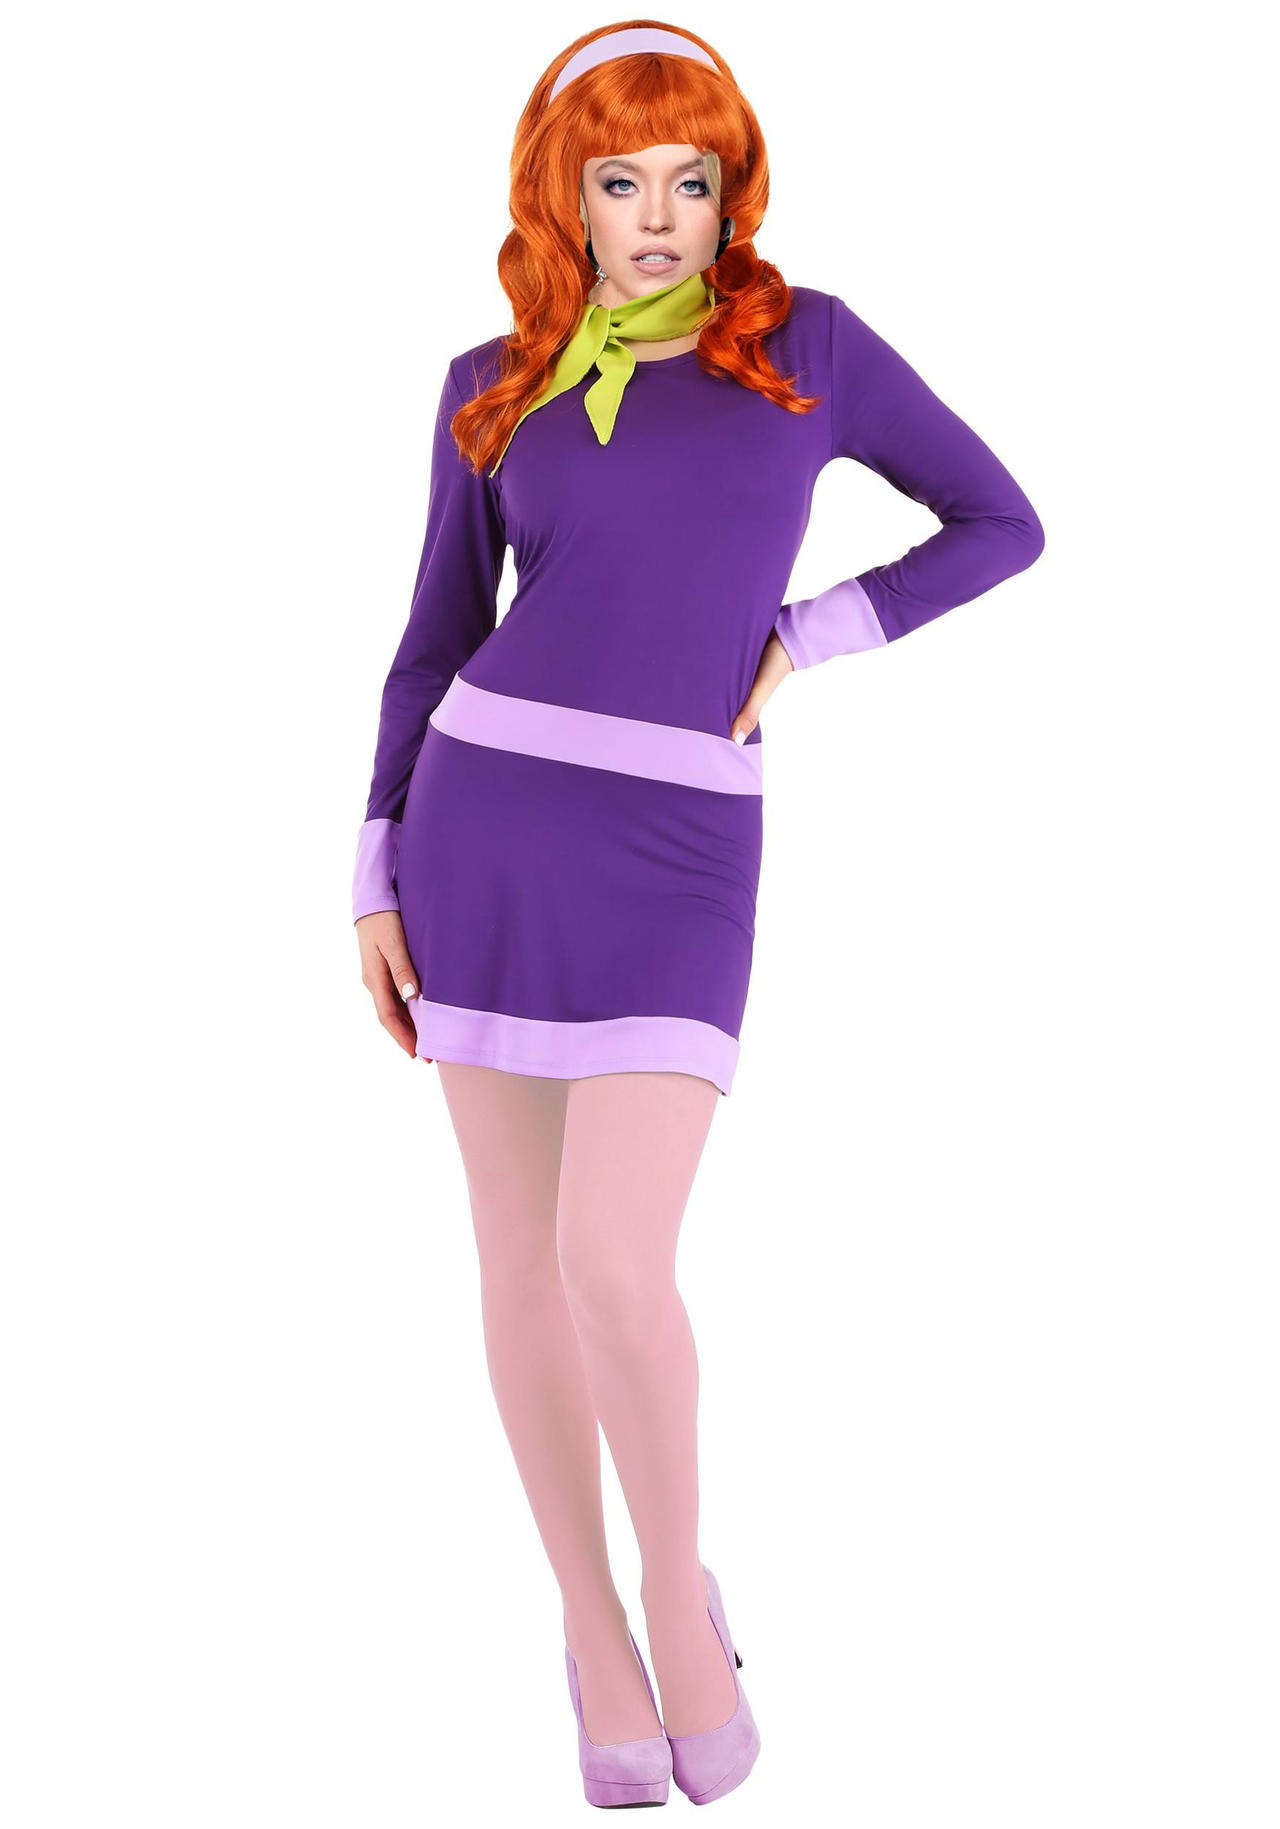 Tim Burton's Scooby-Doo: Velma Dinkley by Knottyorchid12 on DeviantArt